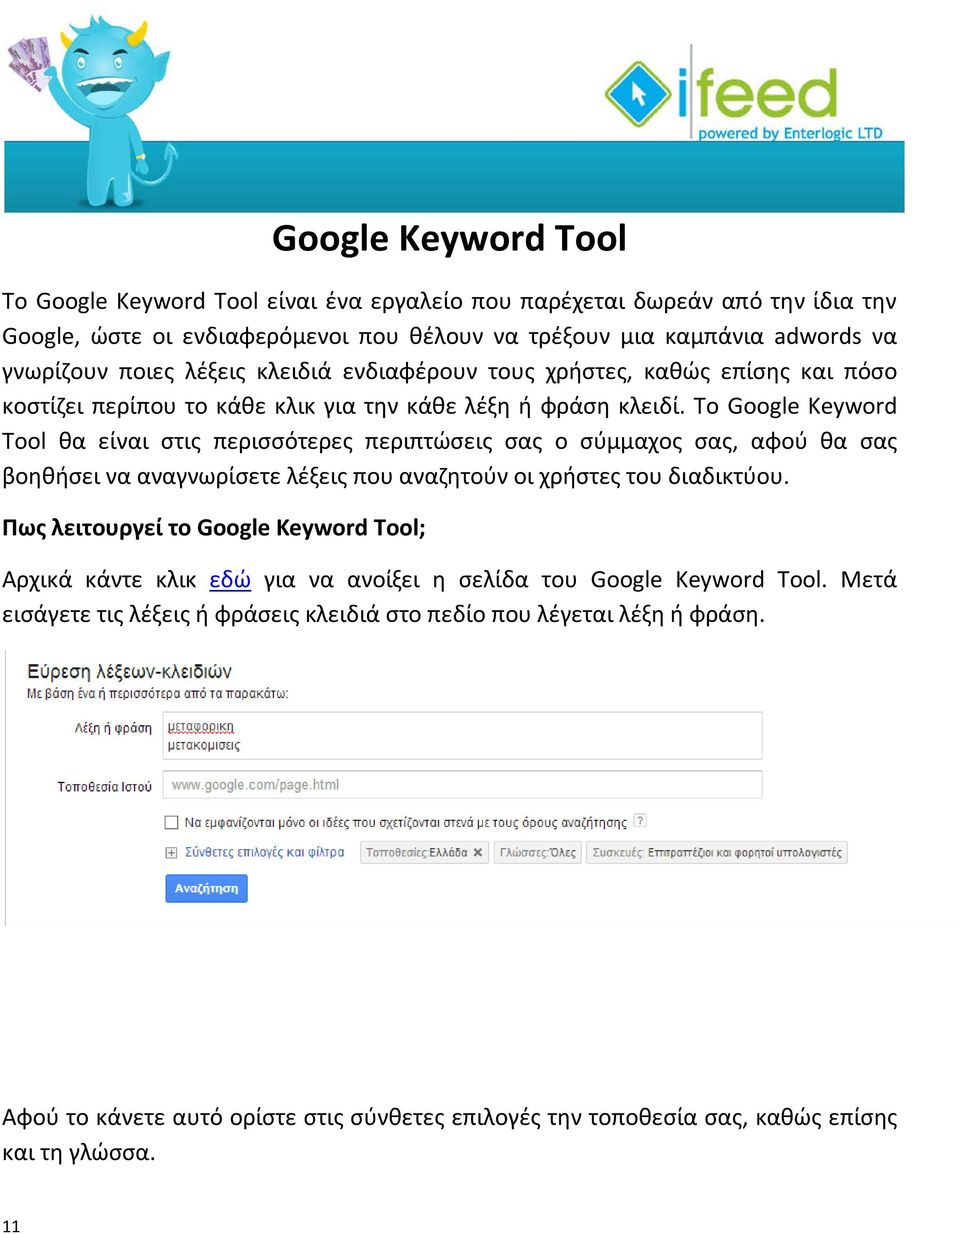 Το Google Keyword Tool θα είναι στις περισσότερες περιπτώσεις σας ο σύμμαχος σας, αφού θα σας βοηθήσει να αναγνωρίσετε λέξεις που αναζητούν οι χρήστες του διαδικτύου.